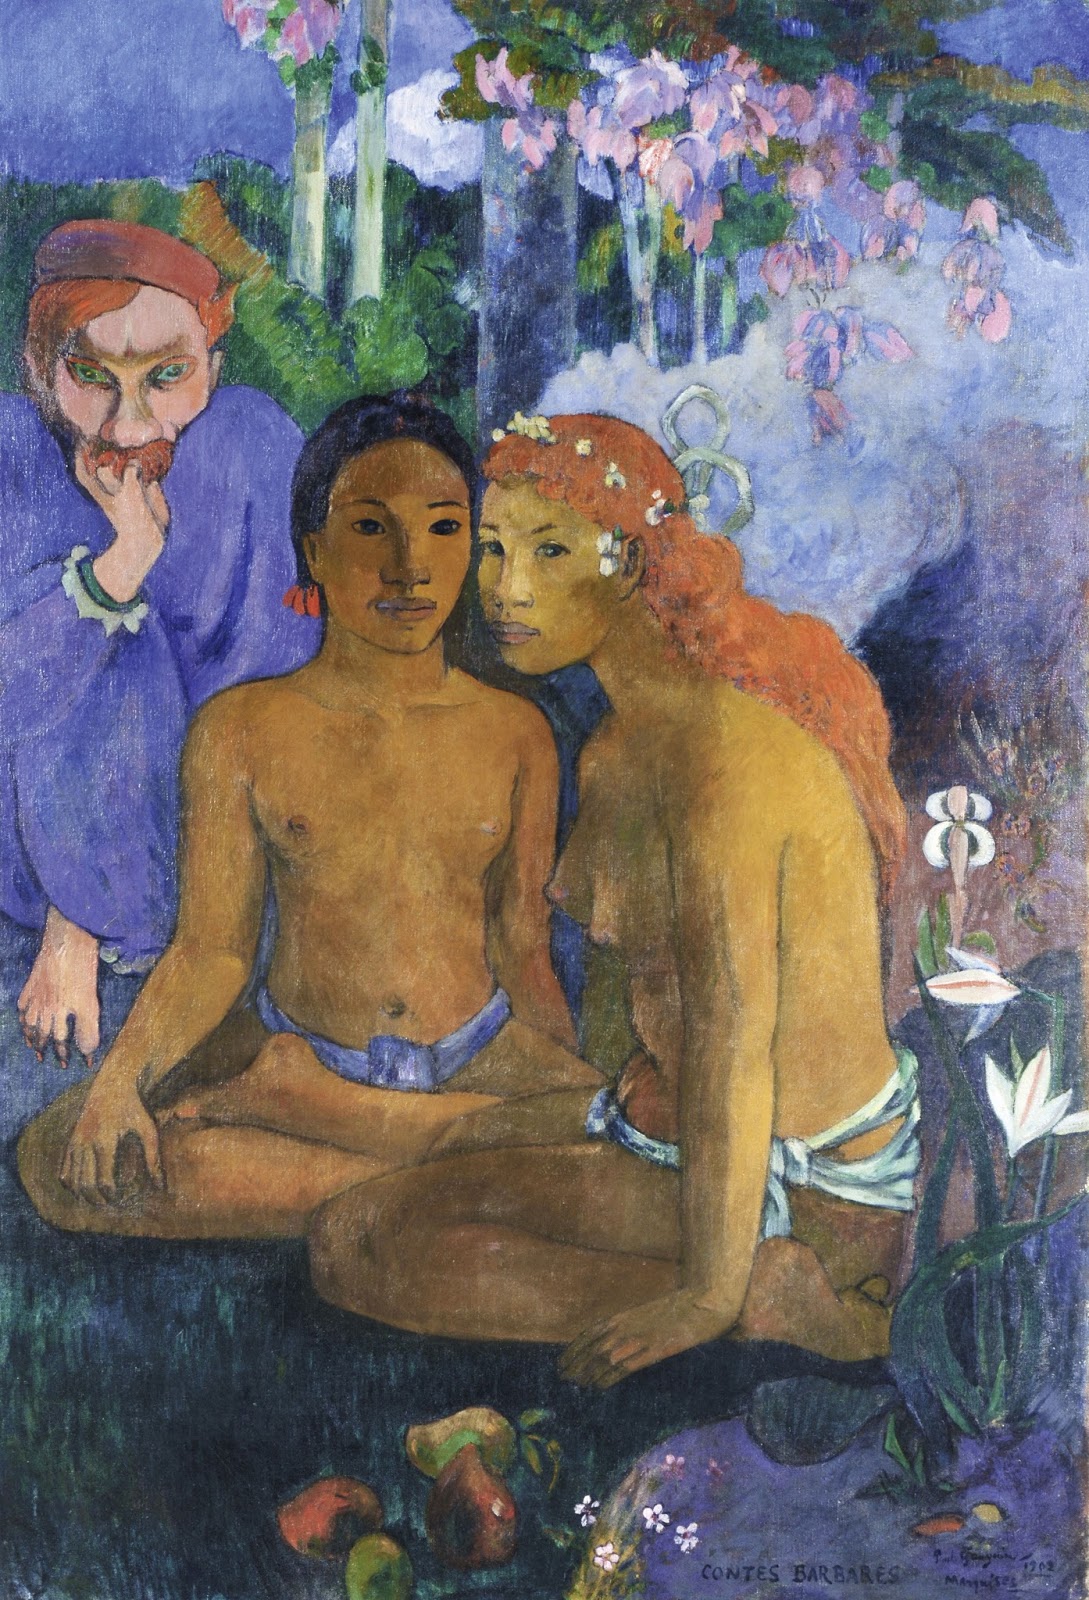 Paul+Gauguin-1848-1903 (314).jpg